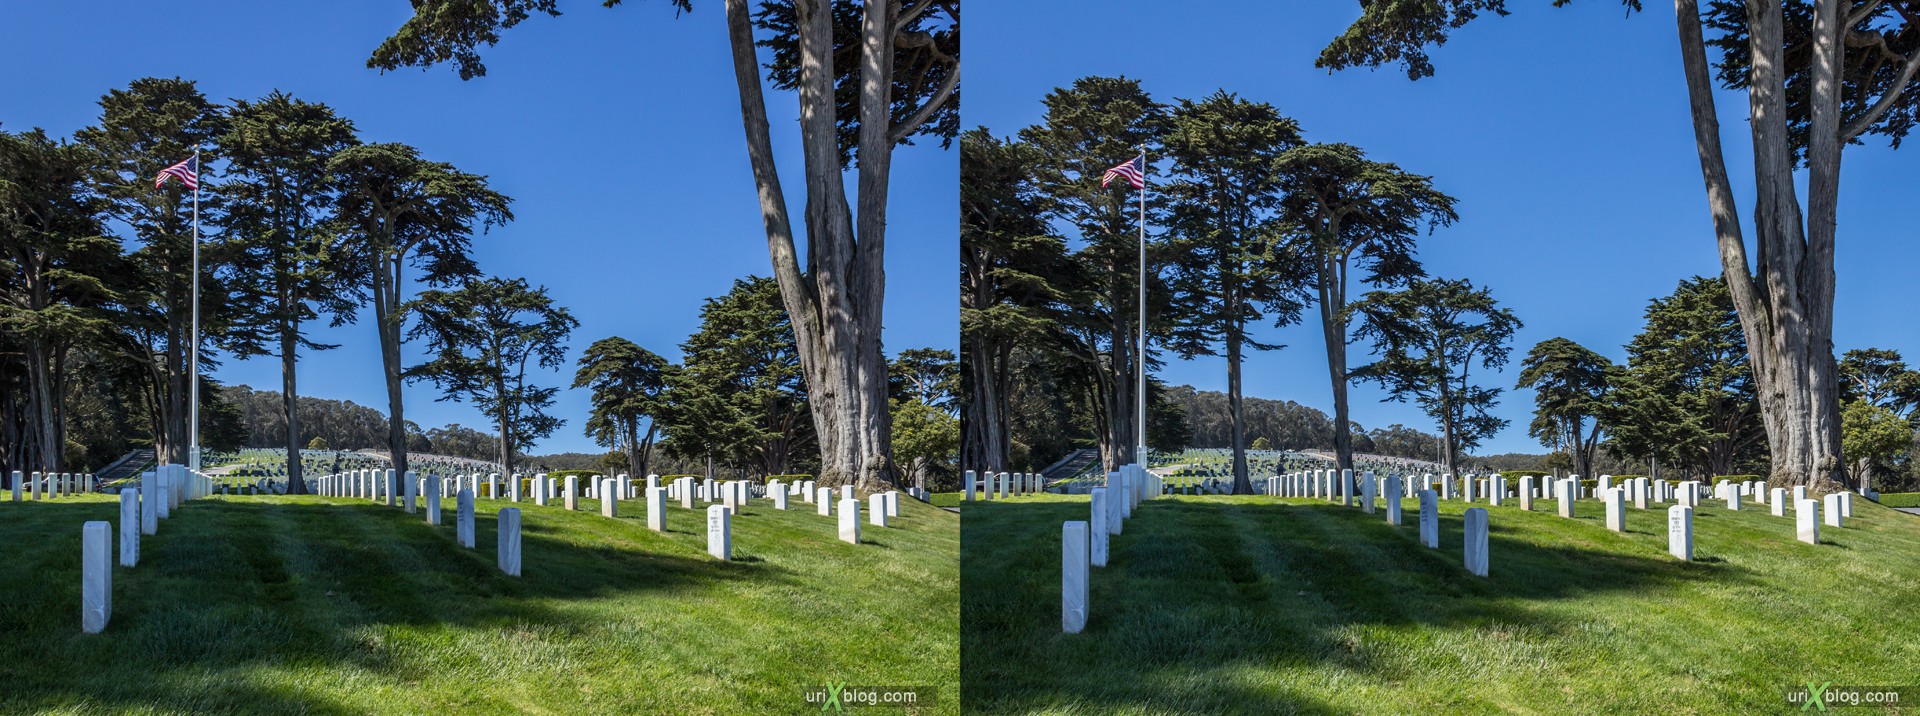 2013, США, Калифорния, Национальное кладбище Сан Франциско, 3D, перекрёстная стереопара, стерео, стереопара